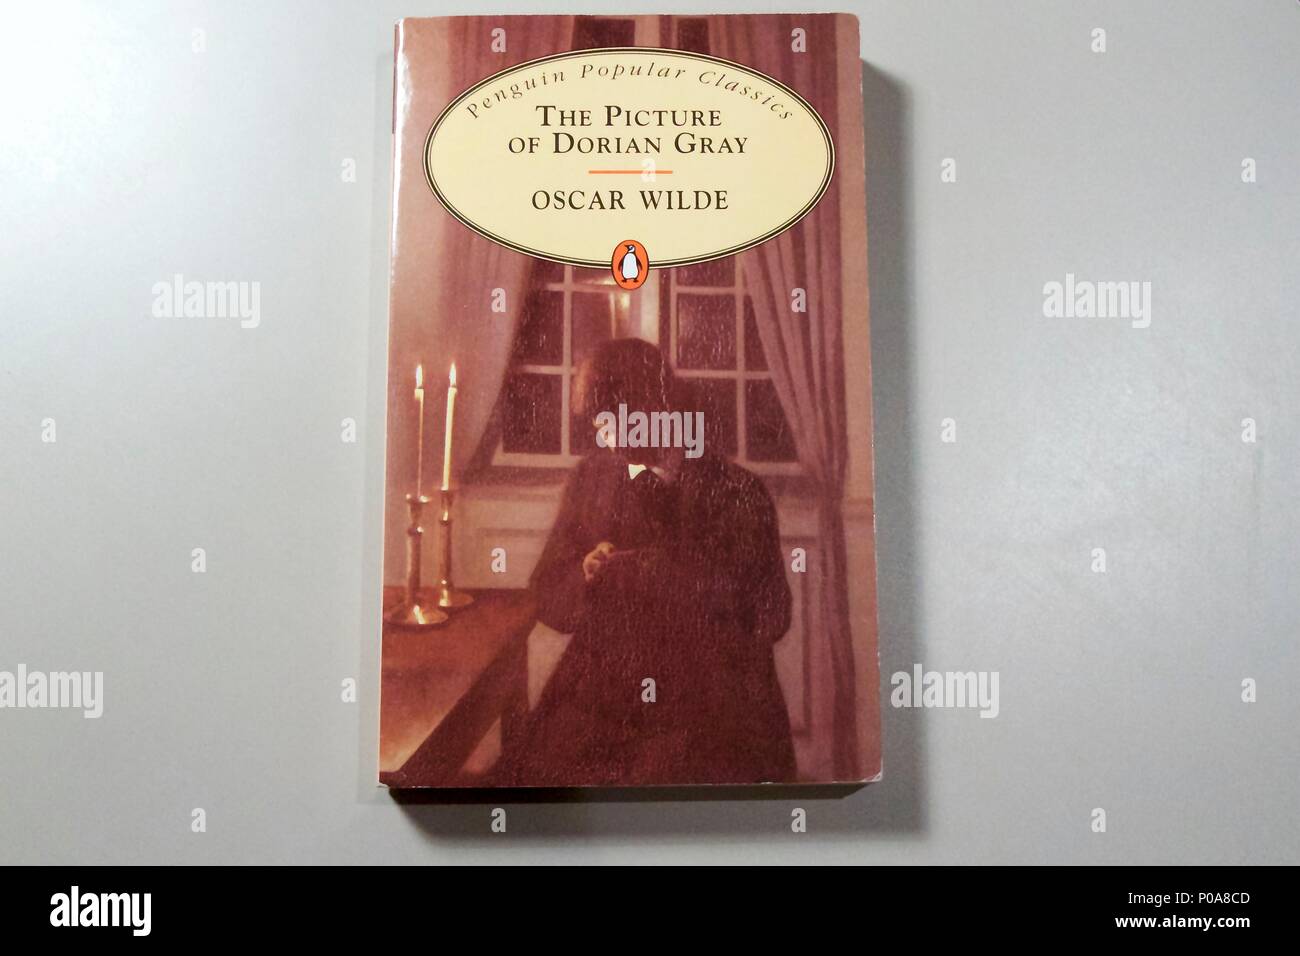 Los clásicos populares Penguin edición en rústica de la imagen de Dorian Gray de Oscar Wilde Foto de stock